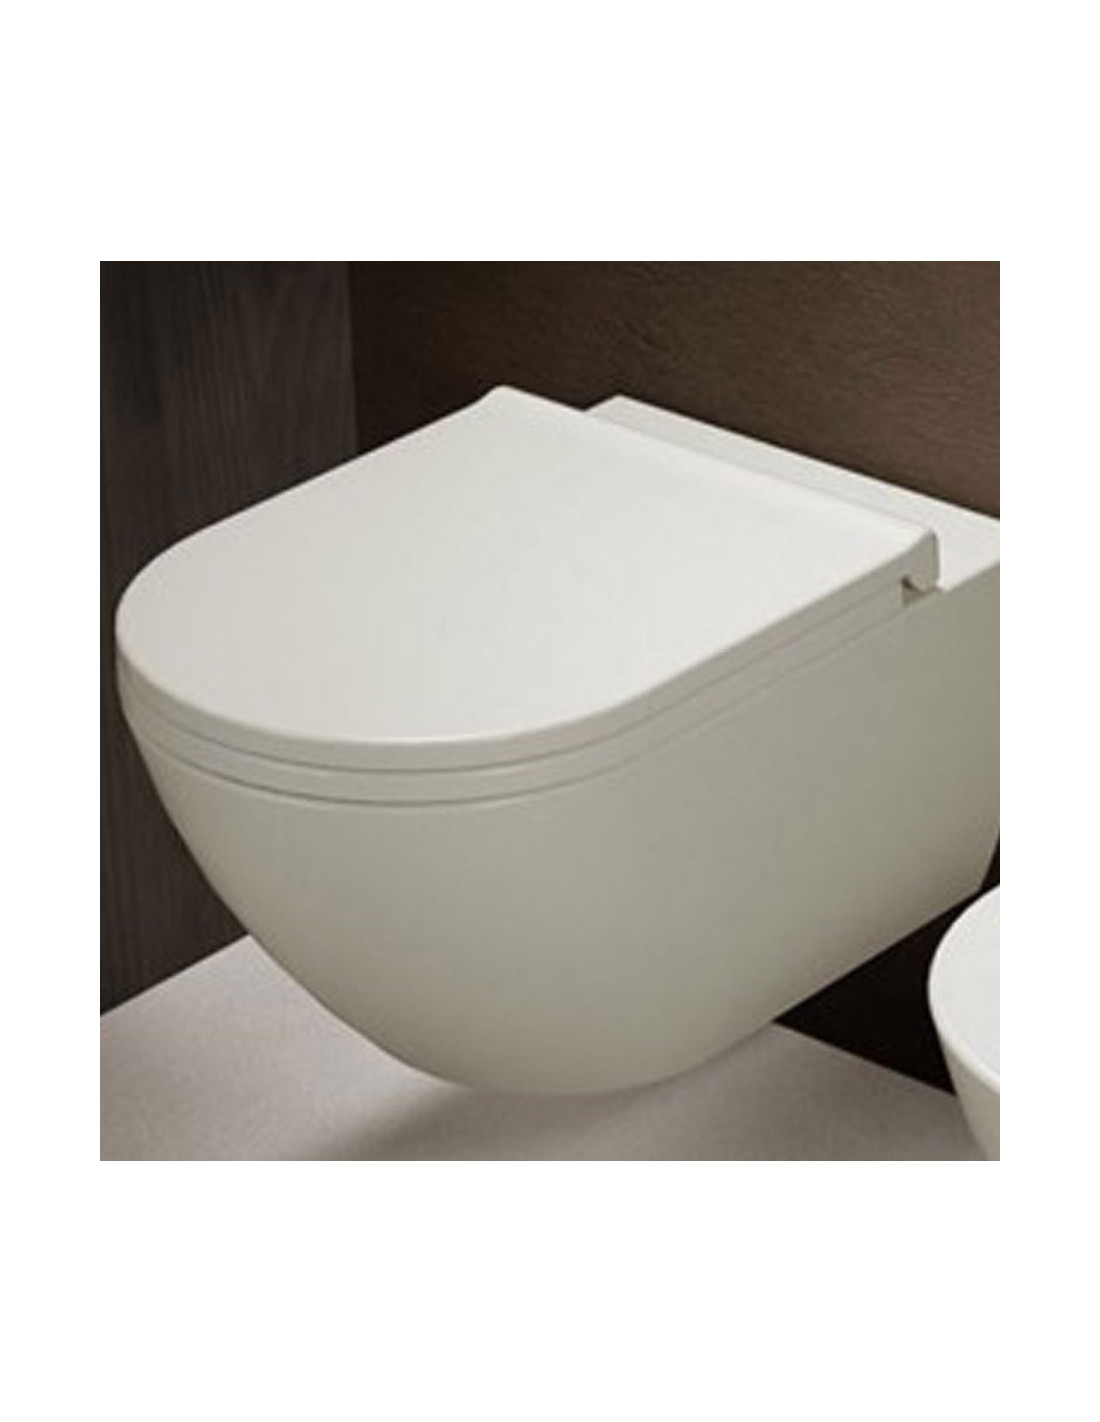 Abattant WC soft close déclipsable ENJOY et ENJOY MINI, Ceramica cielo